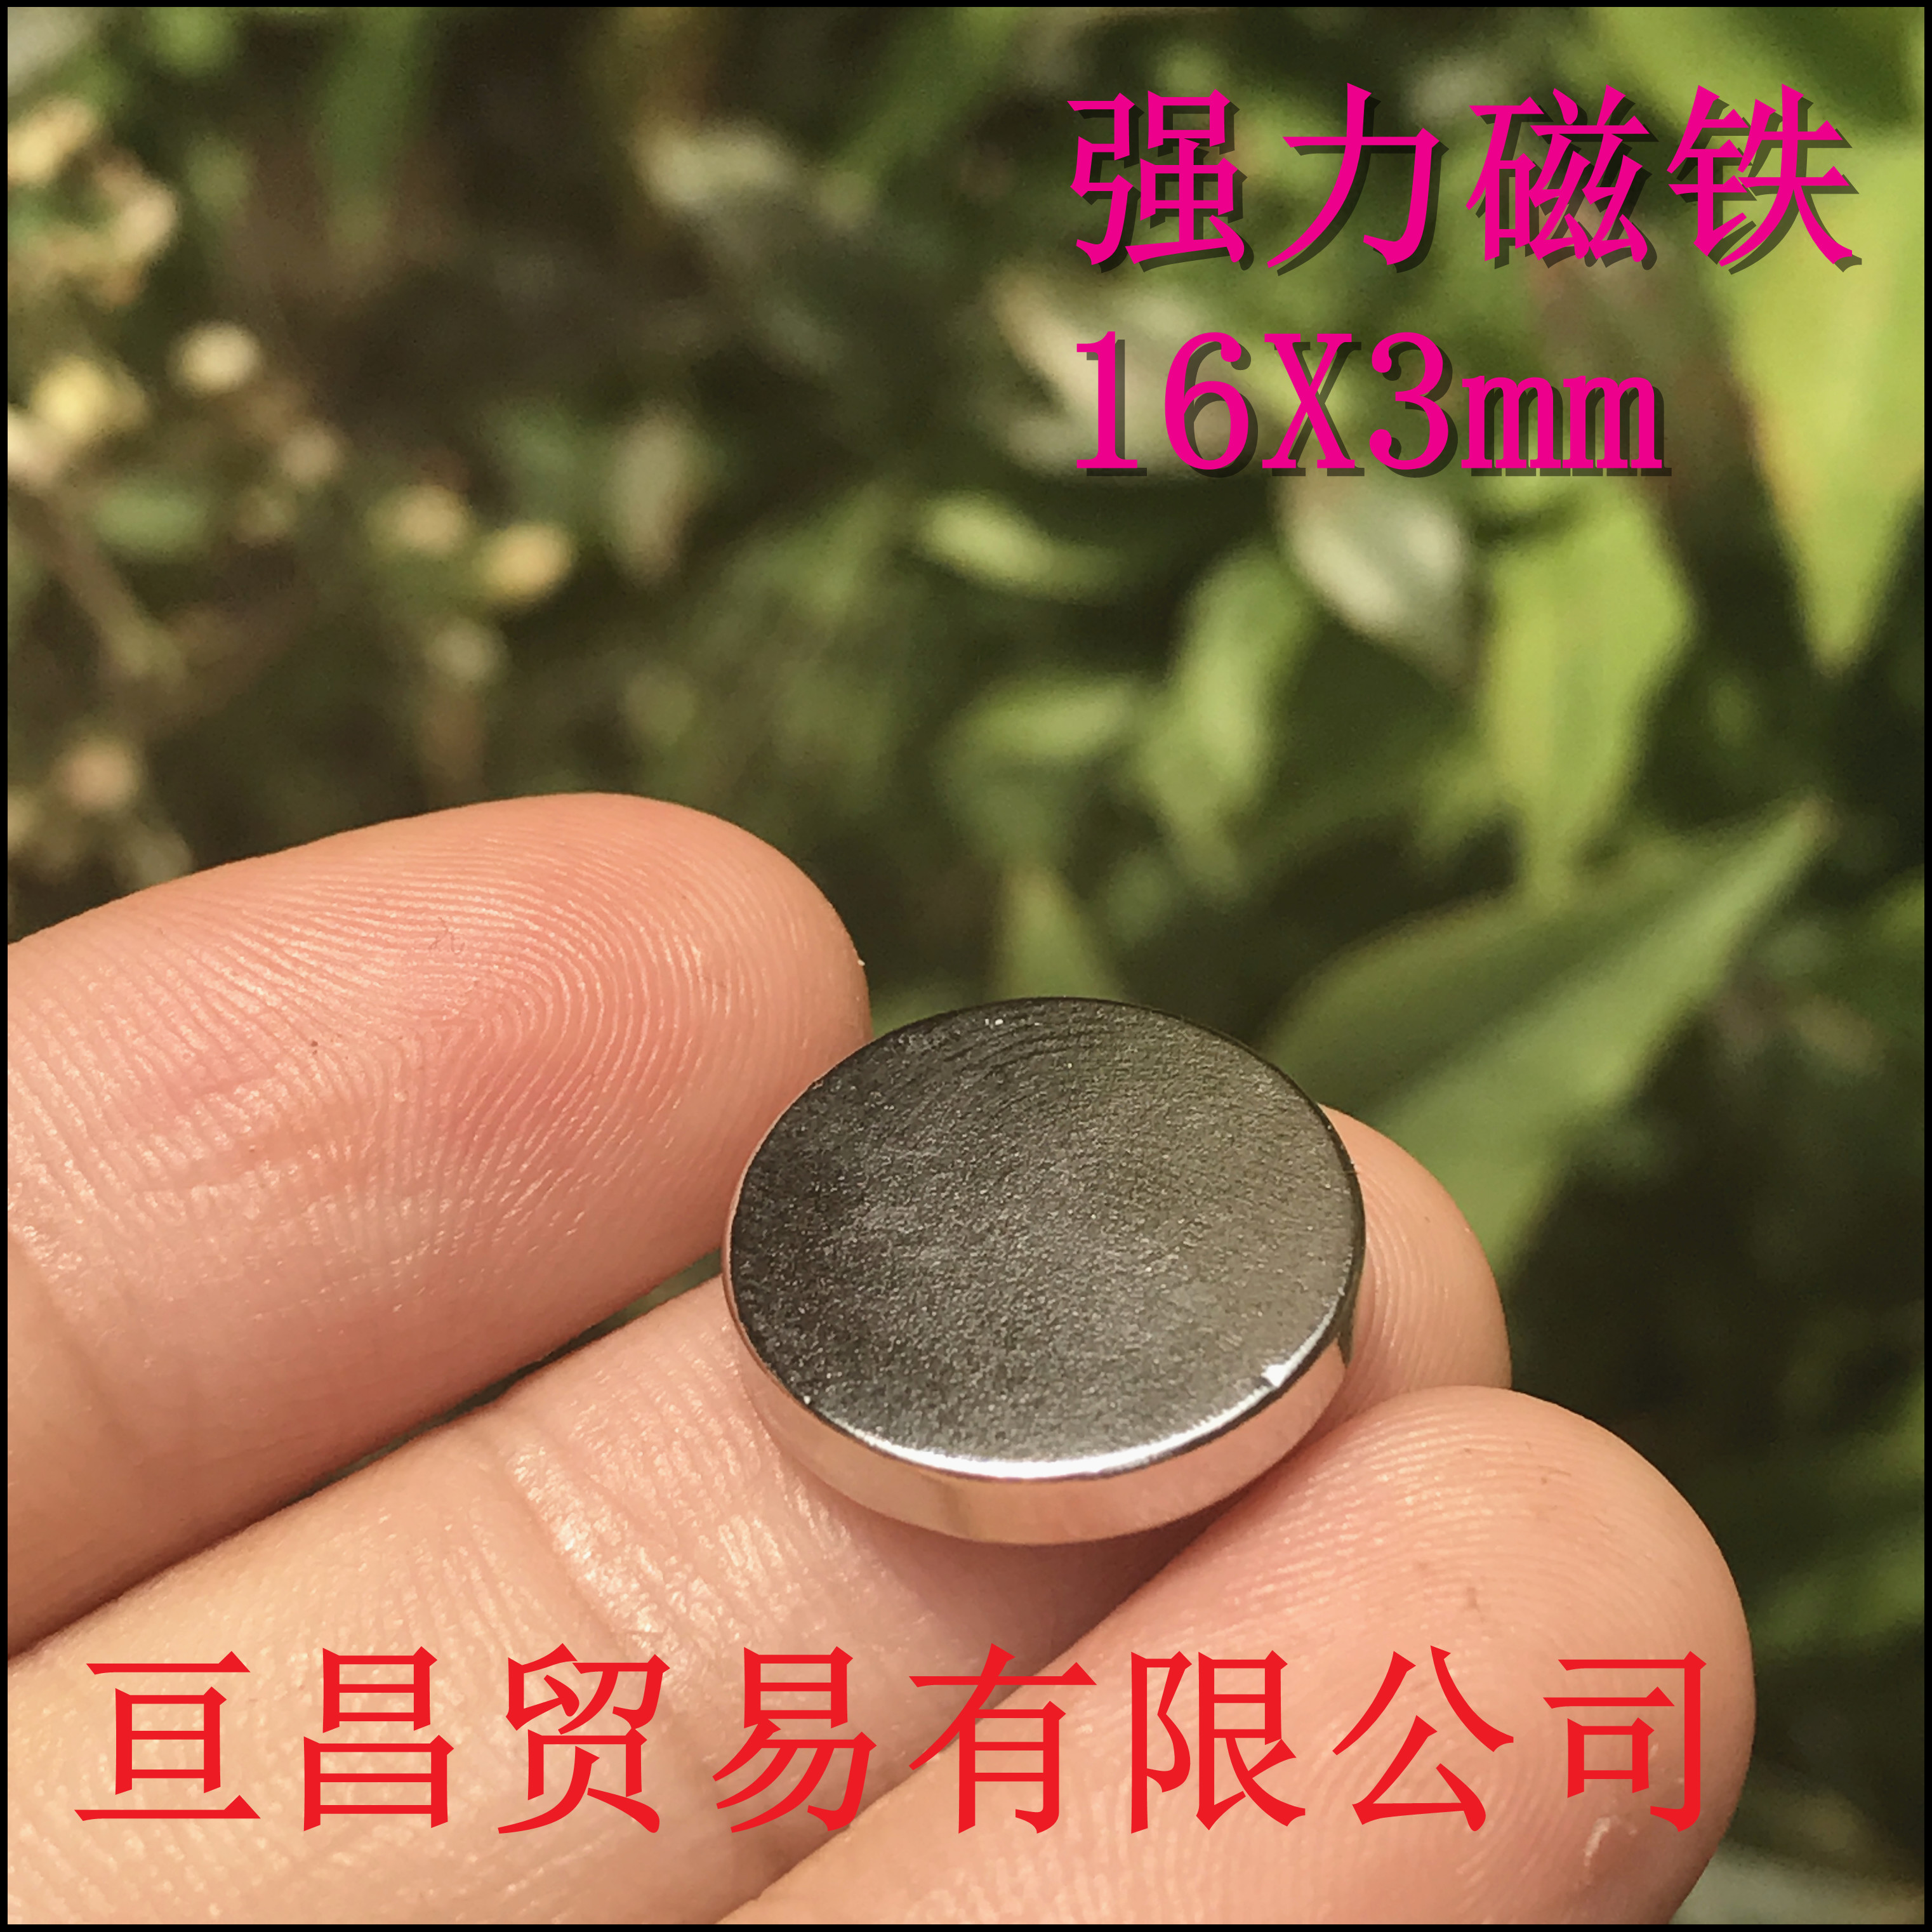 新品磁铁 钕铁硼强磁力铁强磁吸铁石 强力磁铁 圆形磁铁16x3mm_双氙